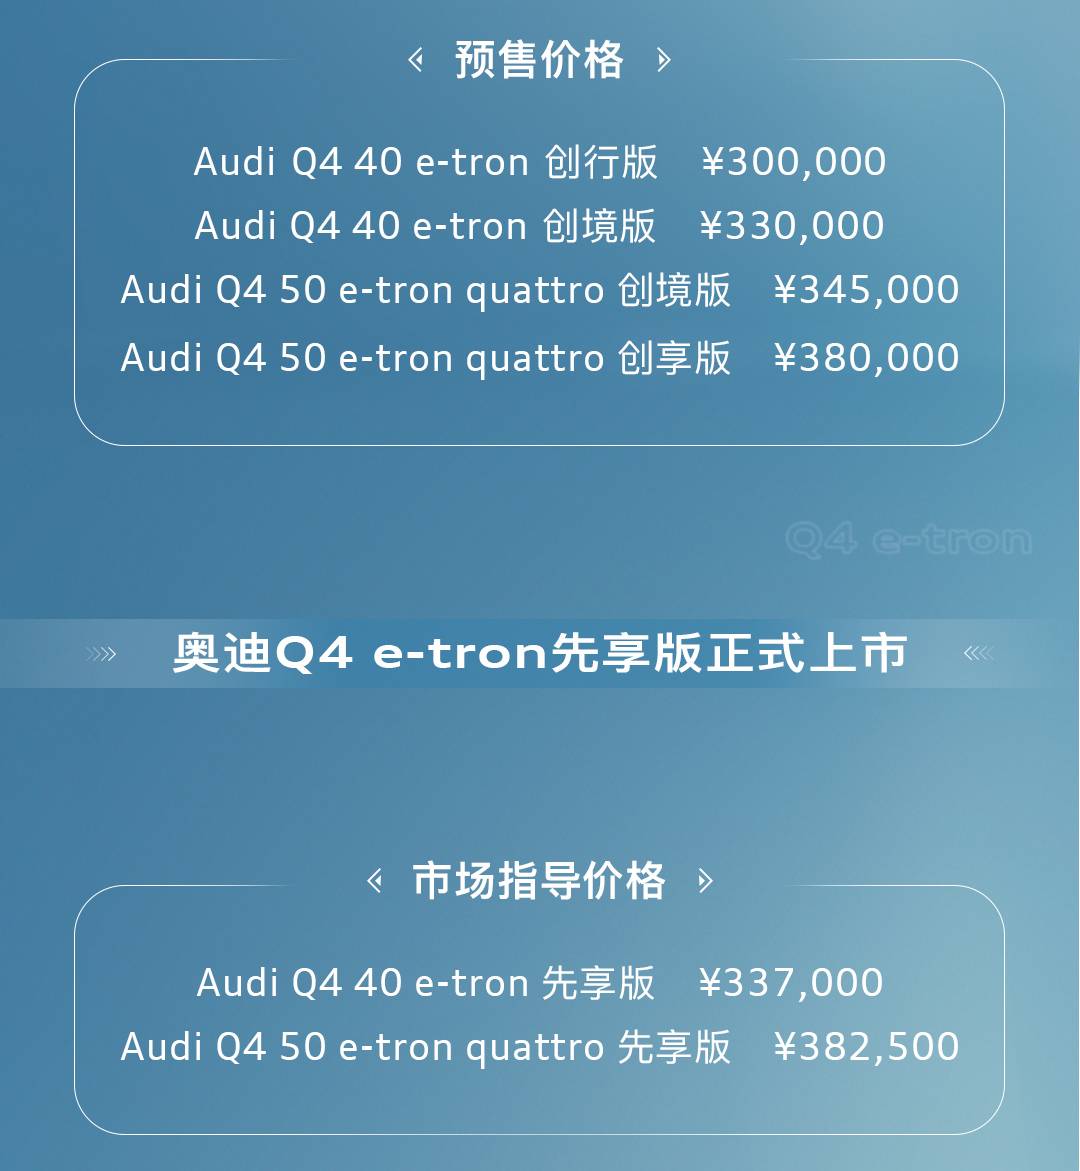 预售价30-38万 奥迪Q4 e-tron开启预售